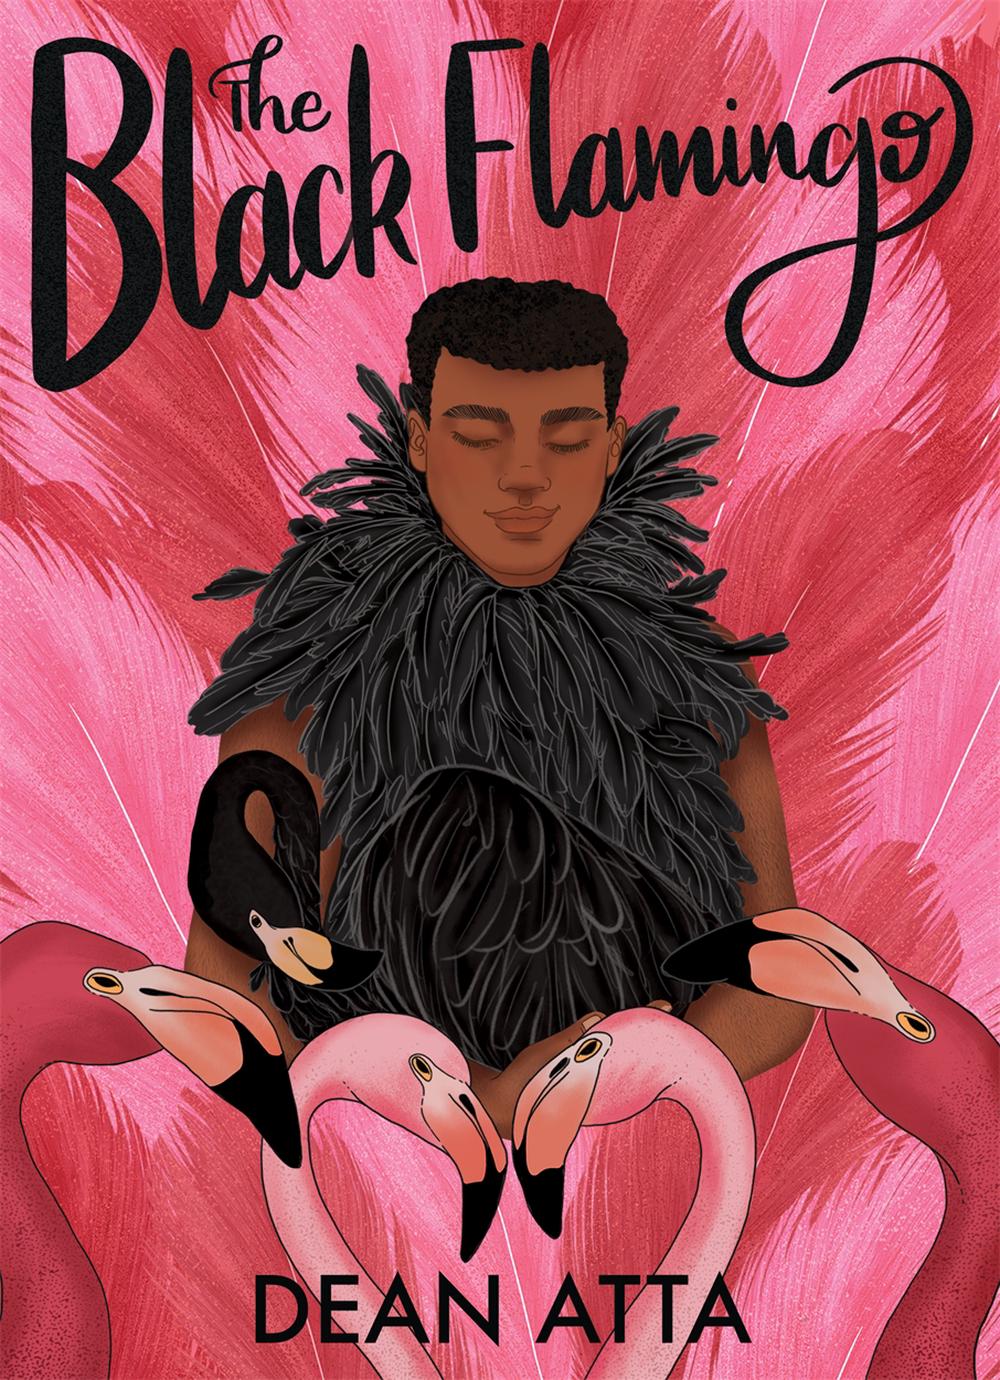 dean atta the black flamingo